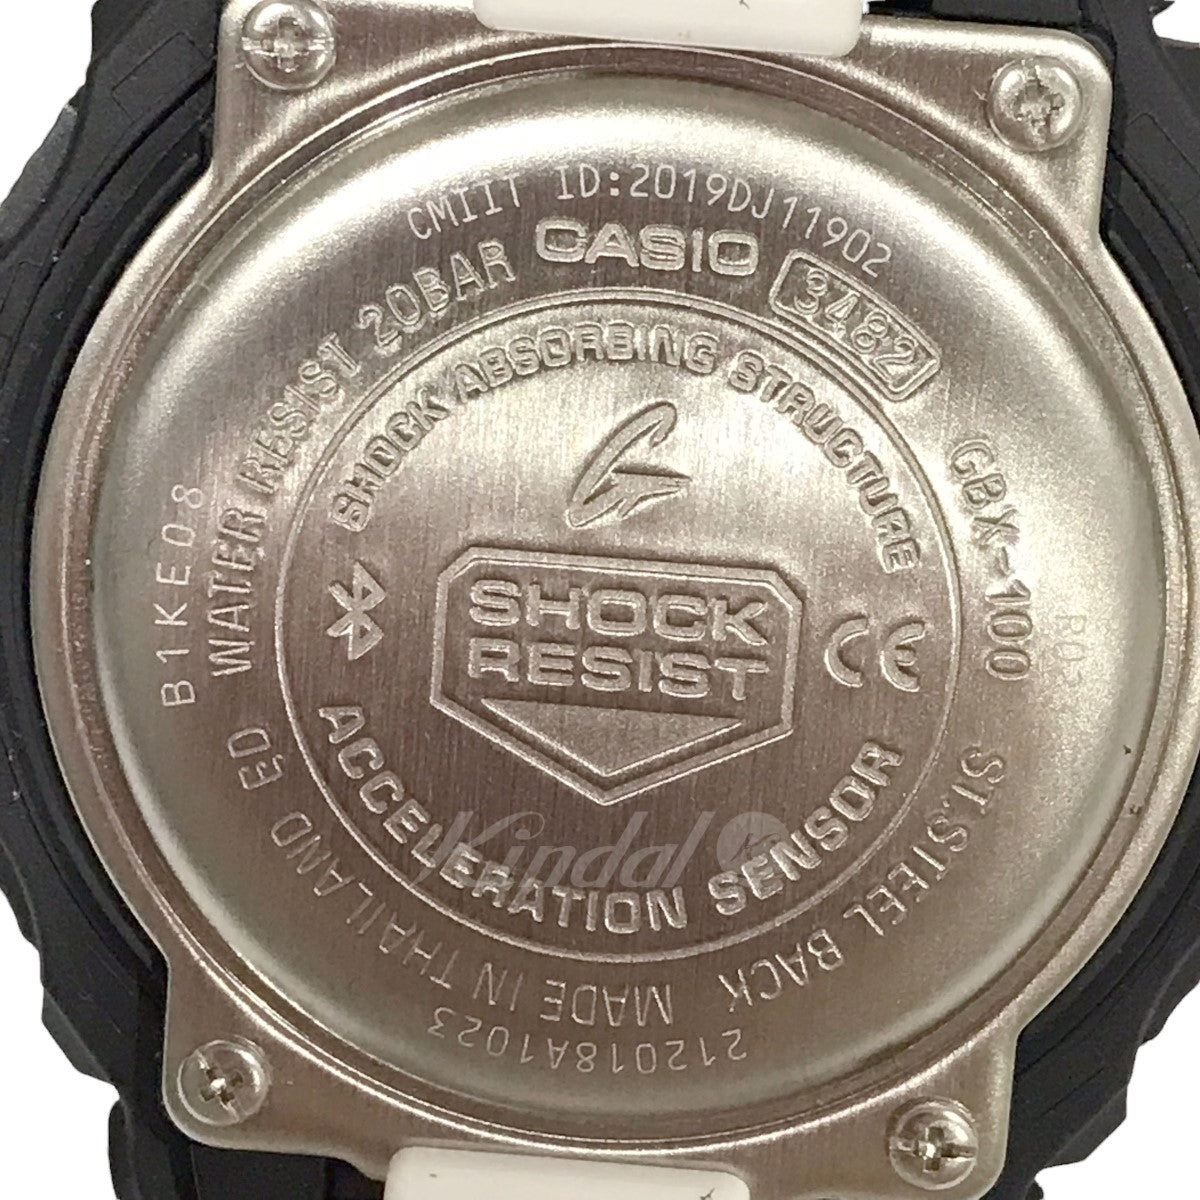 腕時計 GBX-100